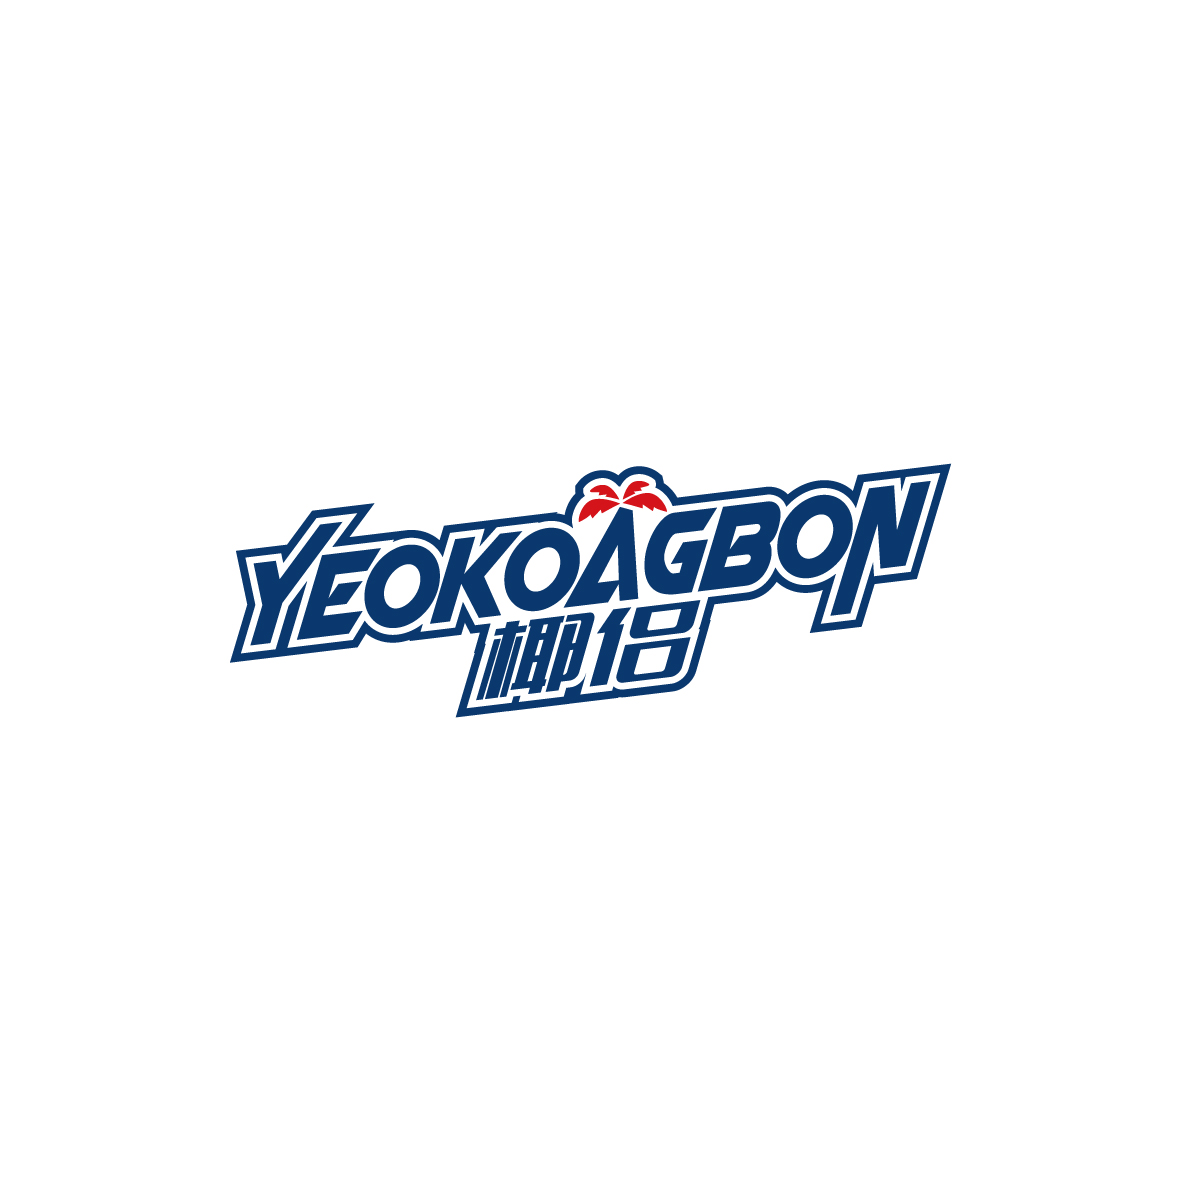 广州锦泰荣网络科技有限公司商标椰侣 YEOKOAGBON（25类）商标买卖平台报价，上哪个平台最省钱？